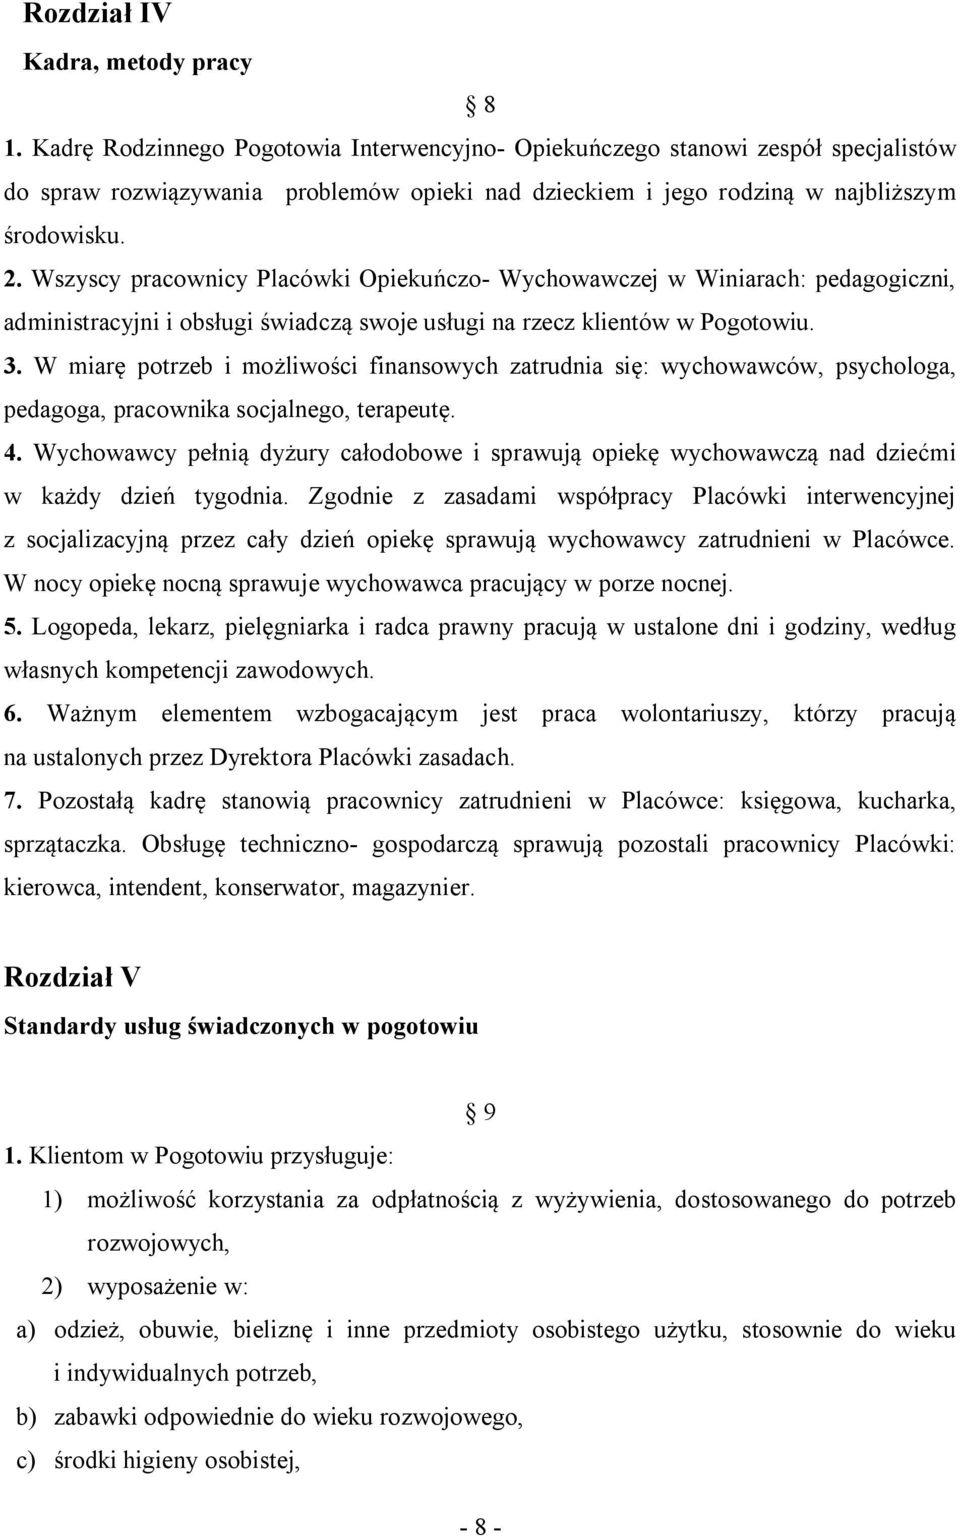 Wszyscy pracownicy Placówki Opiekuńczo- Wychowawczej w Winiarach: pedagogiczni, administracyjni i obsługi świadczą swoje usługi na rzecz klientów w Pogotowiu. 3.